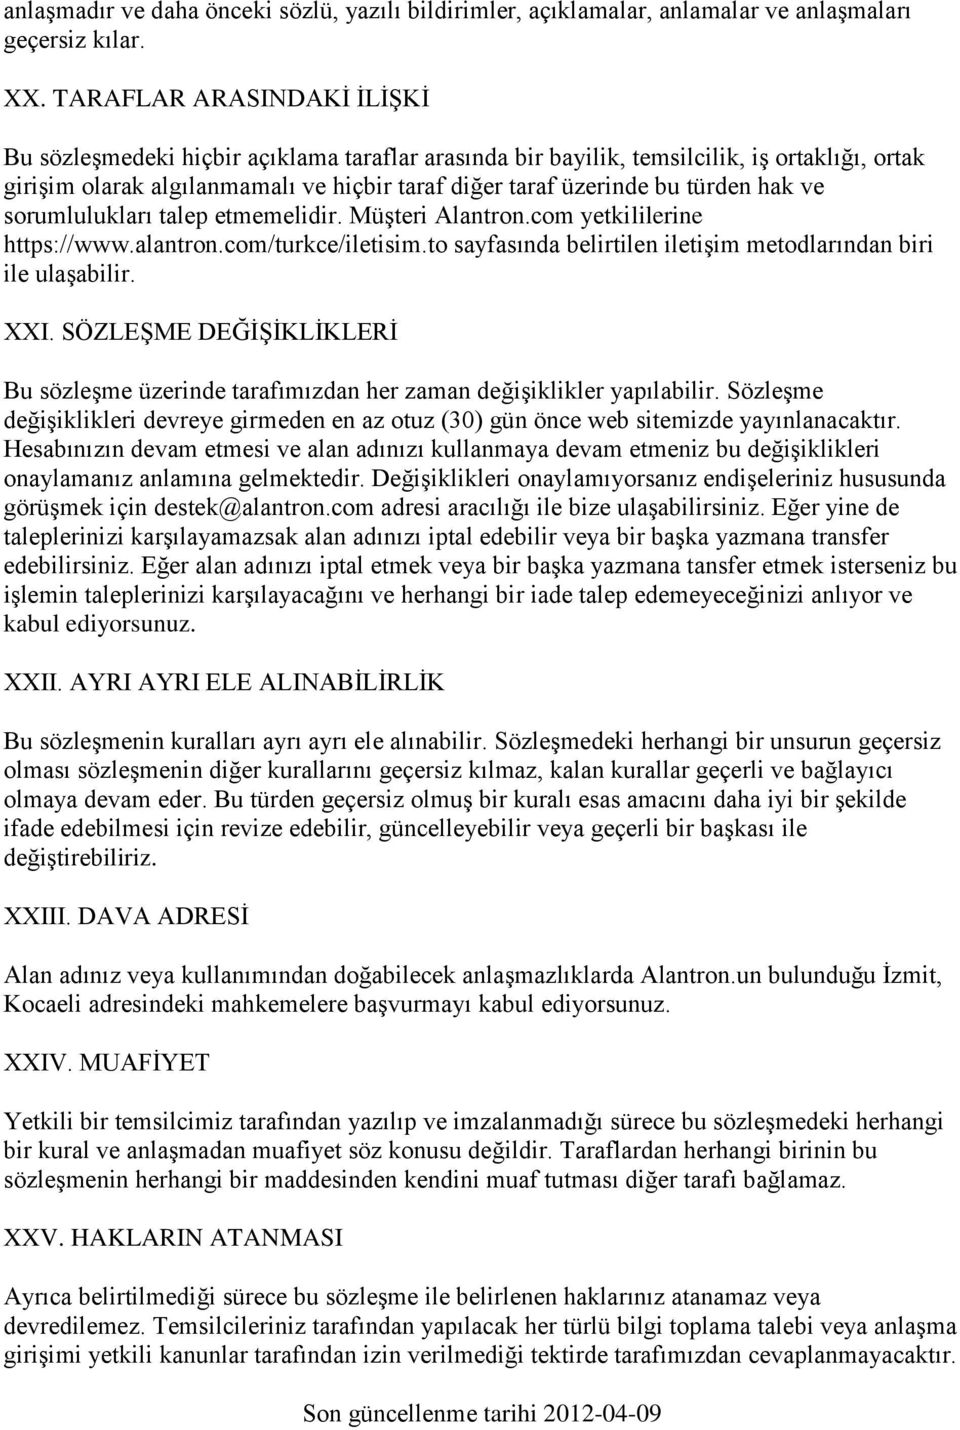 hak ve sorumlulukları talep etmemelidir. Müşteri Alantron.com yetkililerine https://www.alantron.com/turkce/iletisim.to sayfasında belirtilen iletişim metodlarından biri ile ulaşabilir. XXI.